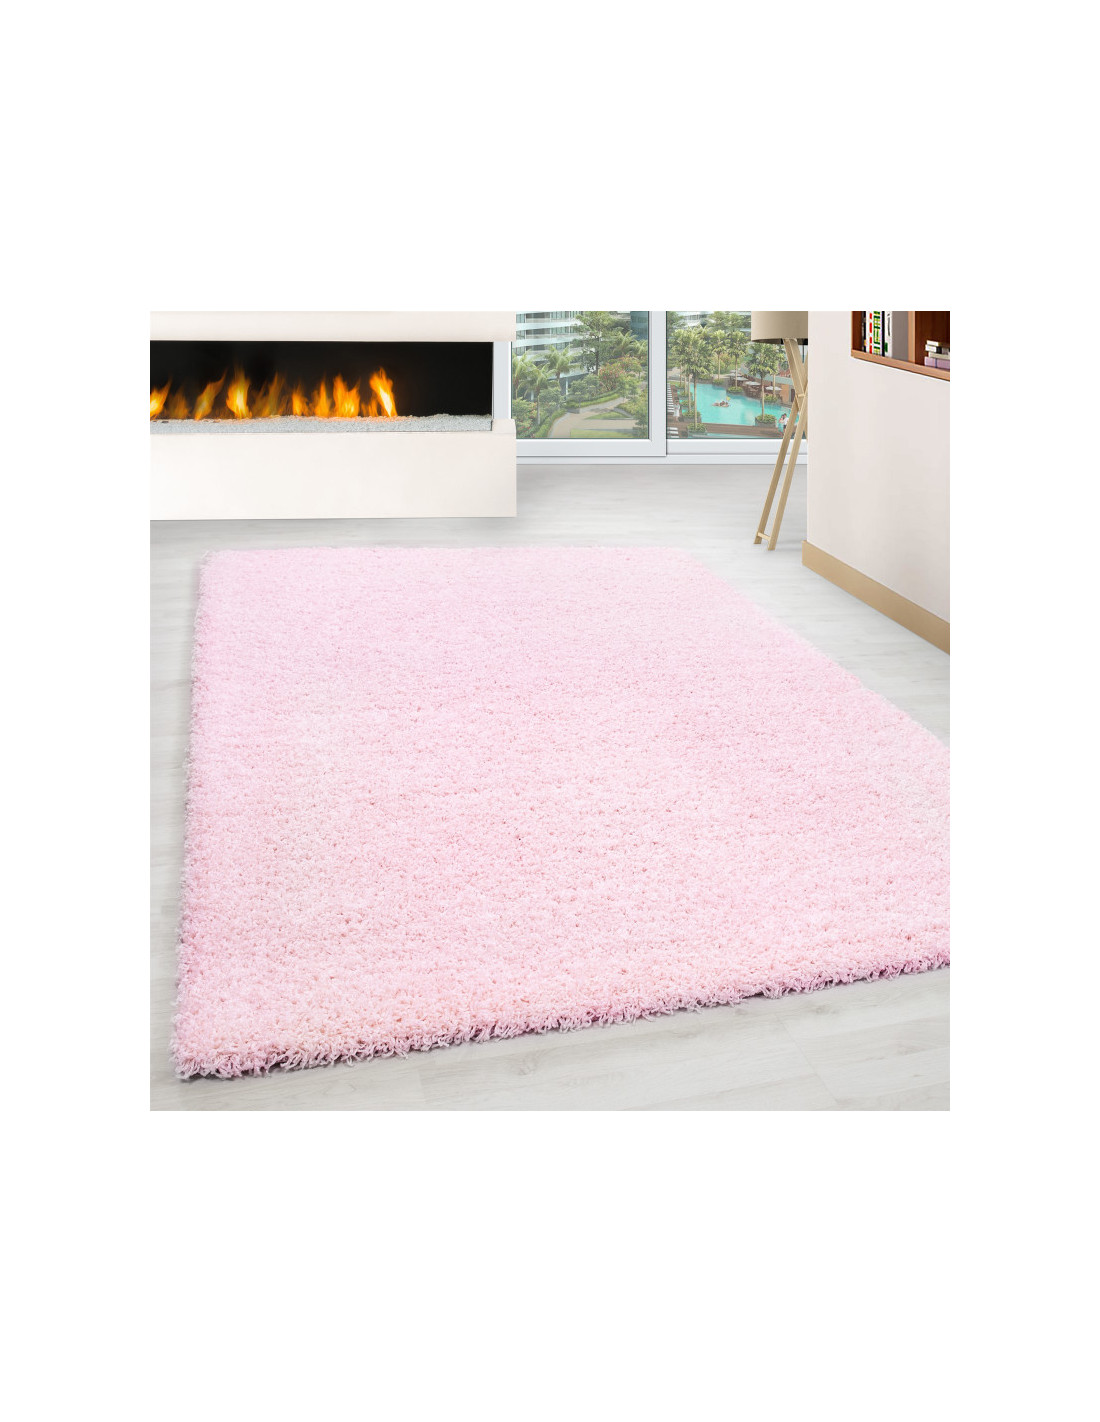 Shaggy carpet, pile height 3cm, uni-color pink